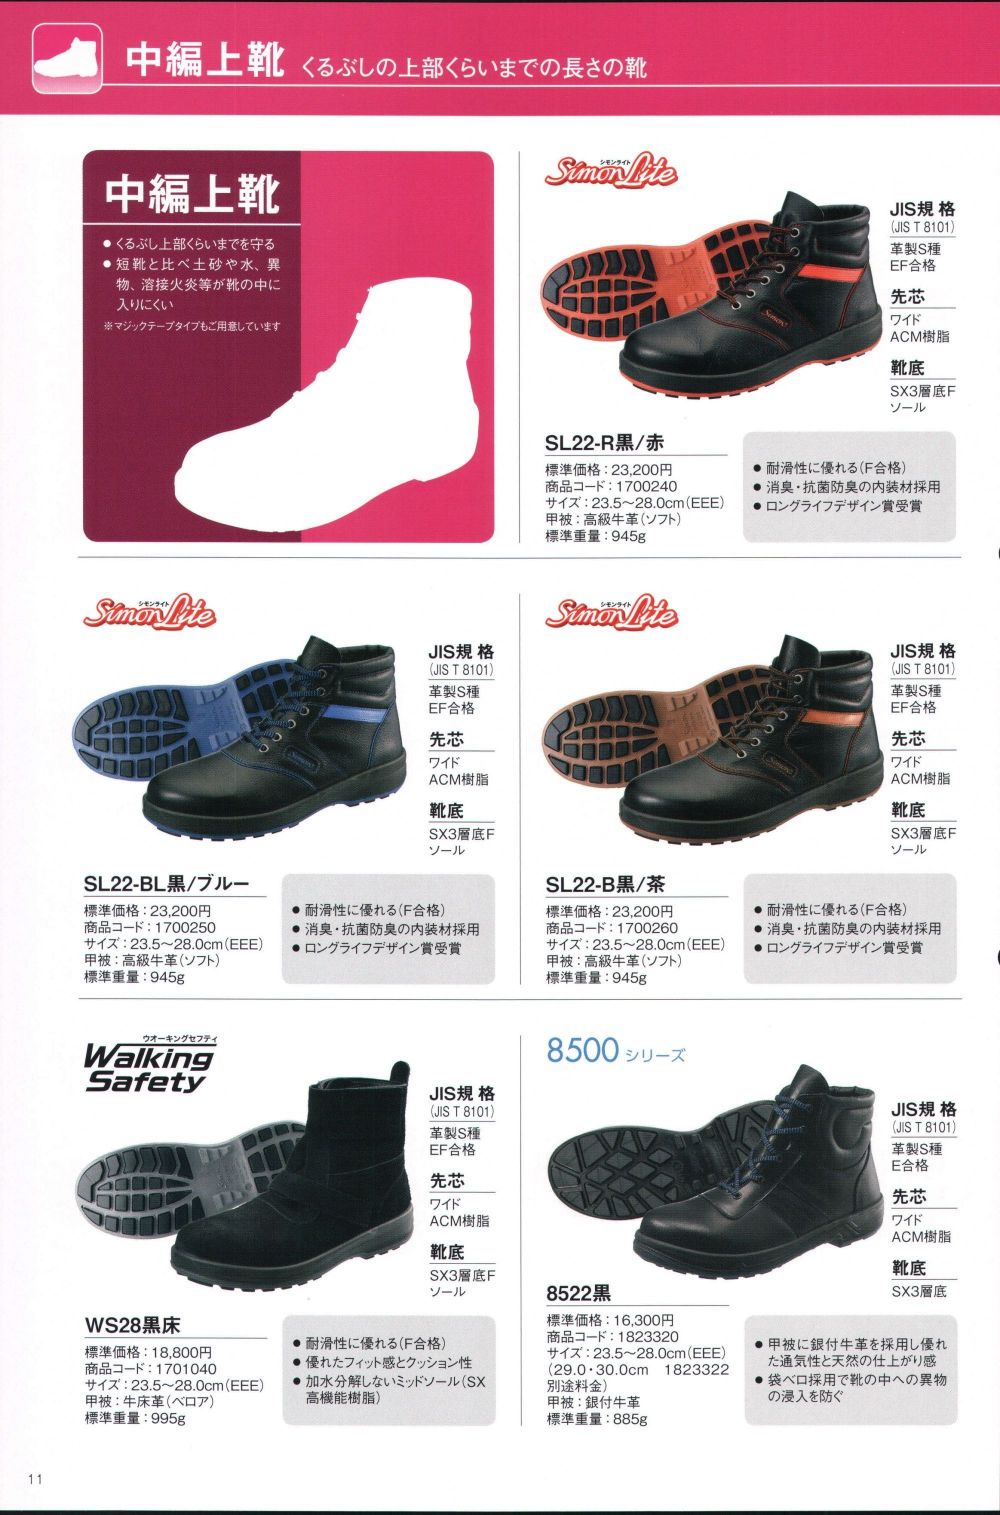 日本メーカー新品 シモン 安全靴 WS 28 黒床 JIS 8101 S種 規格 ベロア 溶接 ワイド 樹脂 先芯 SX 3層 耐滑 ハイカット ワーク ブーツ 牛革 現場 作業 セーフティ